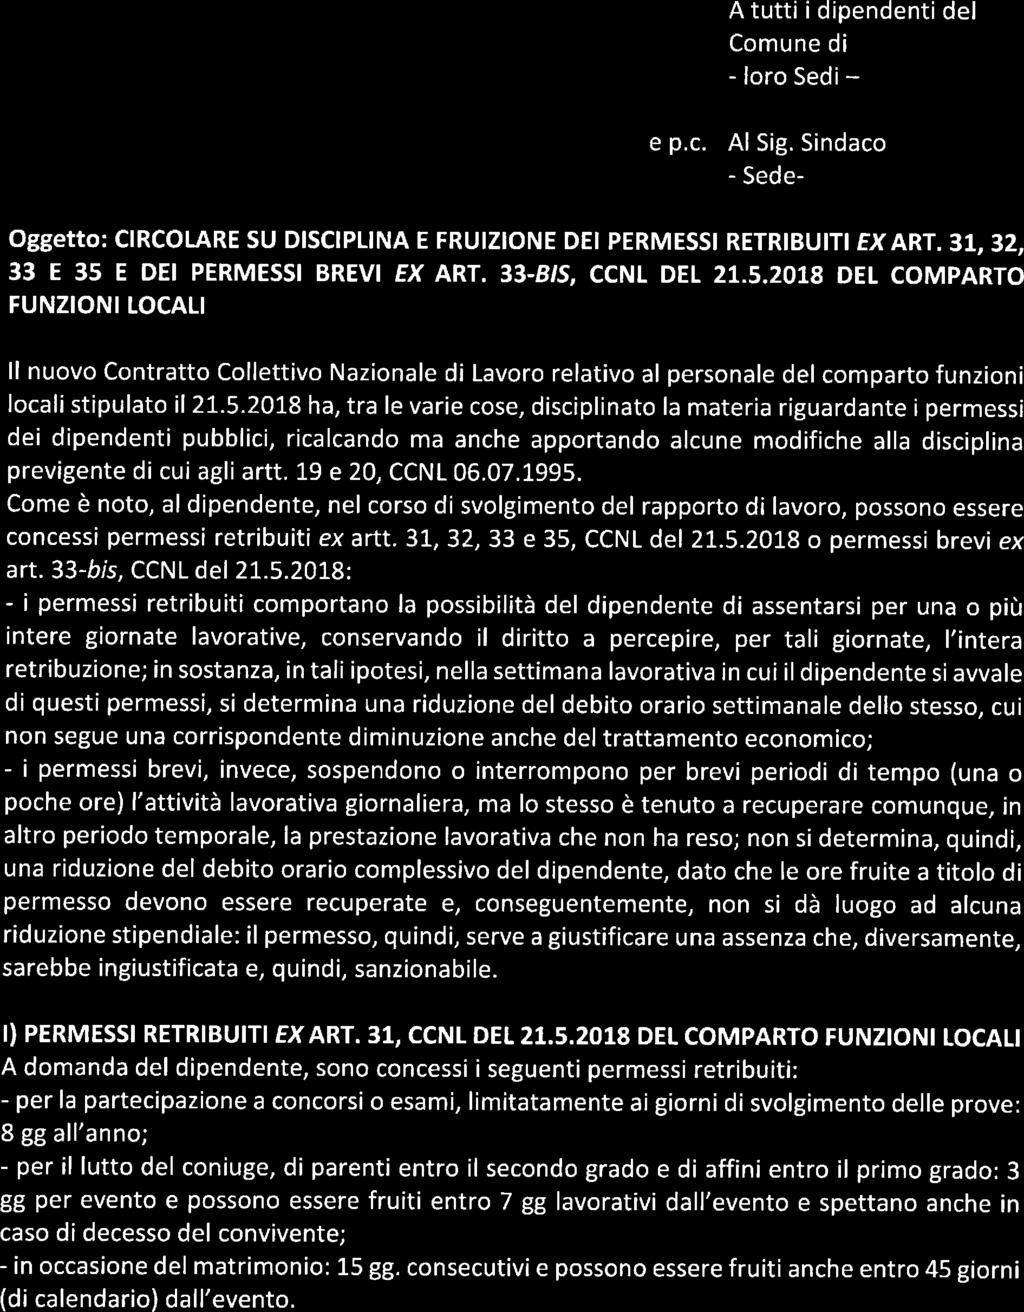 E DEI PERMESSI BREVI EX ART. 33-B/S, CCNL DEL 21.5.